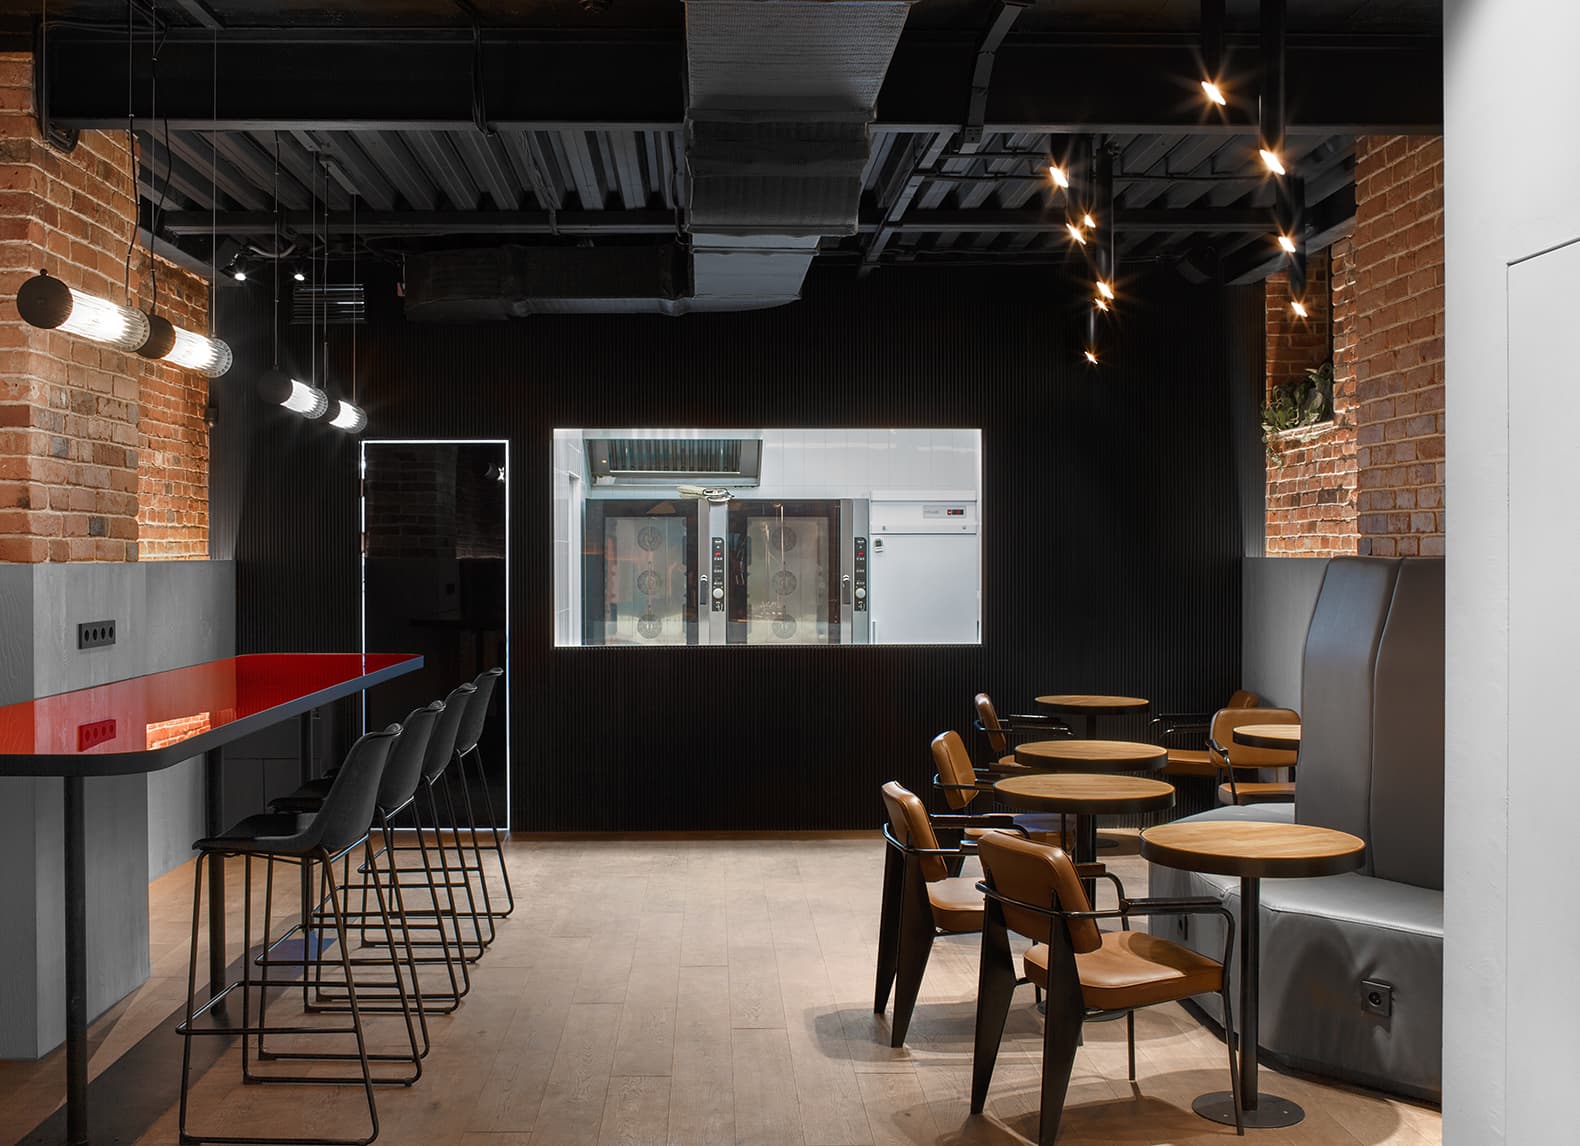 Пекарня на подиуме — проект бюро Miyao. Обмерный план помещения